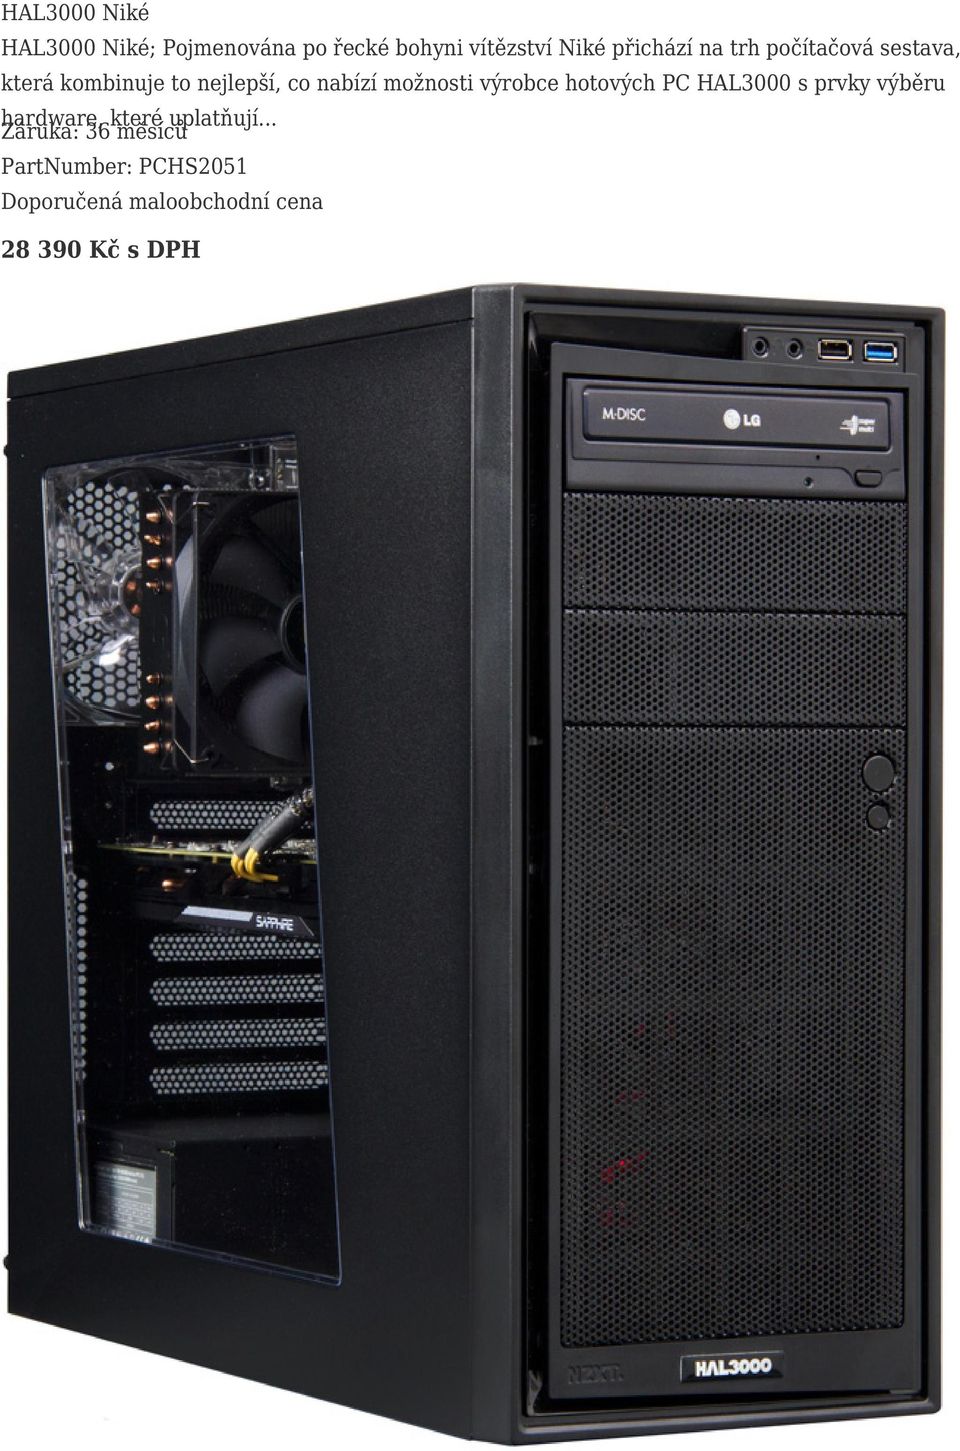 možnosti výrobce hotových PC HAL3000 s prvky výběru hardware, které